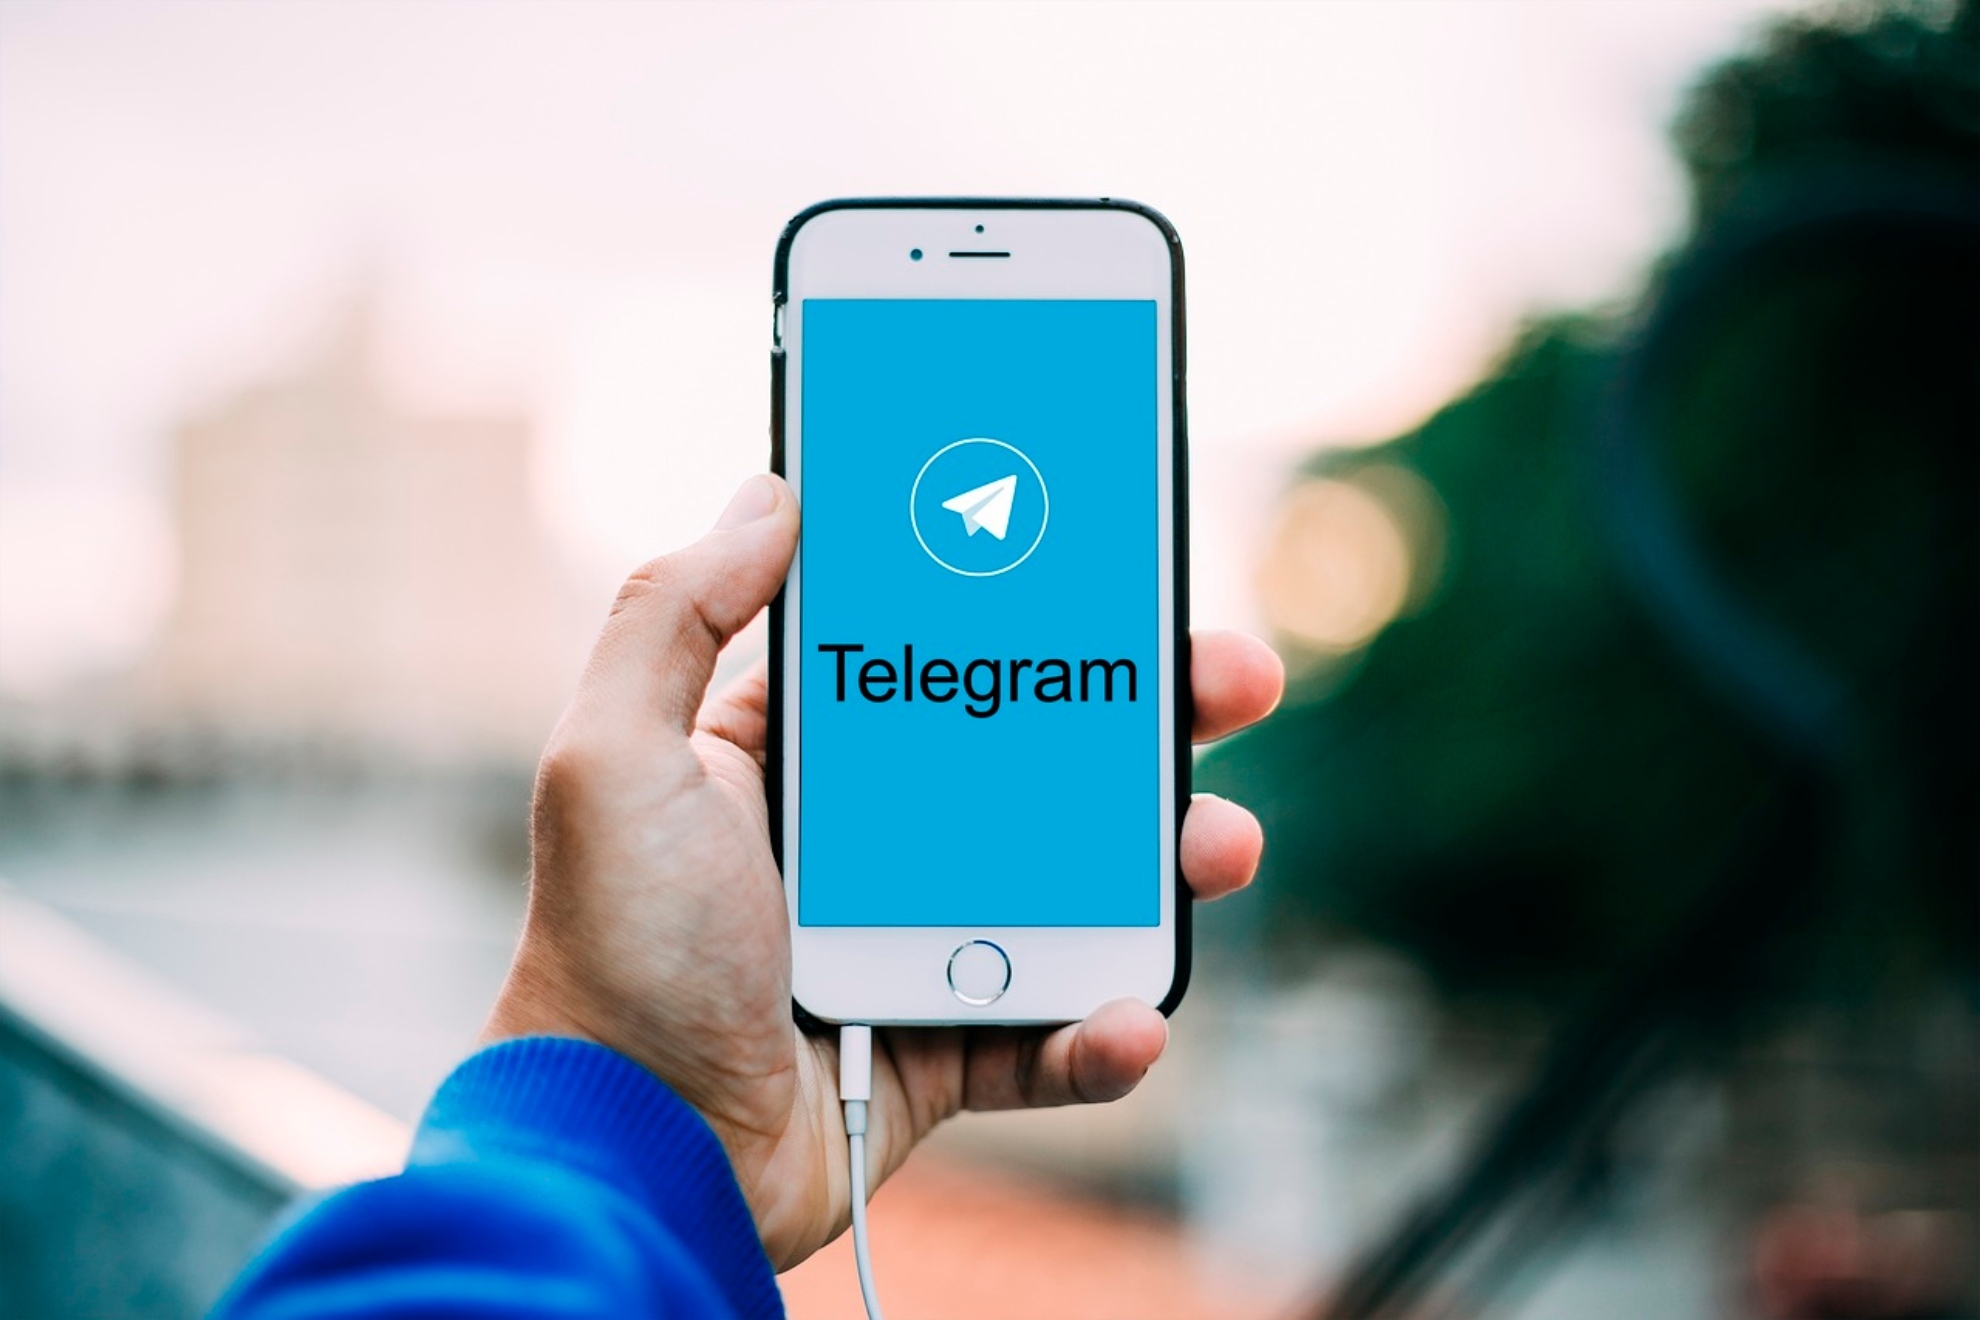 El juez Pedraz considera ahora excesivo el bloqueo de Telegram y retira la orden de suspensin